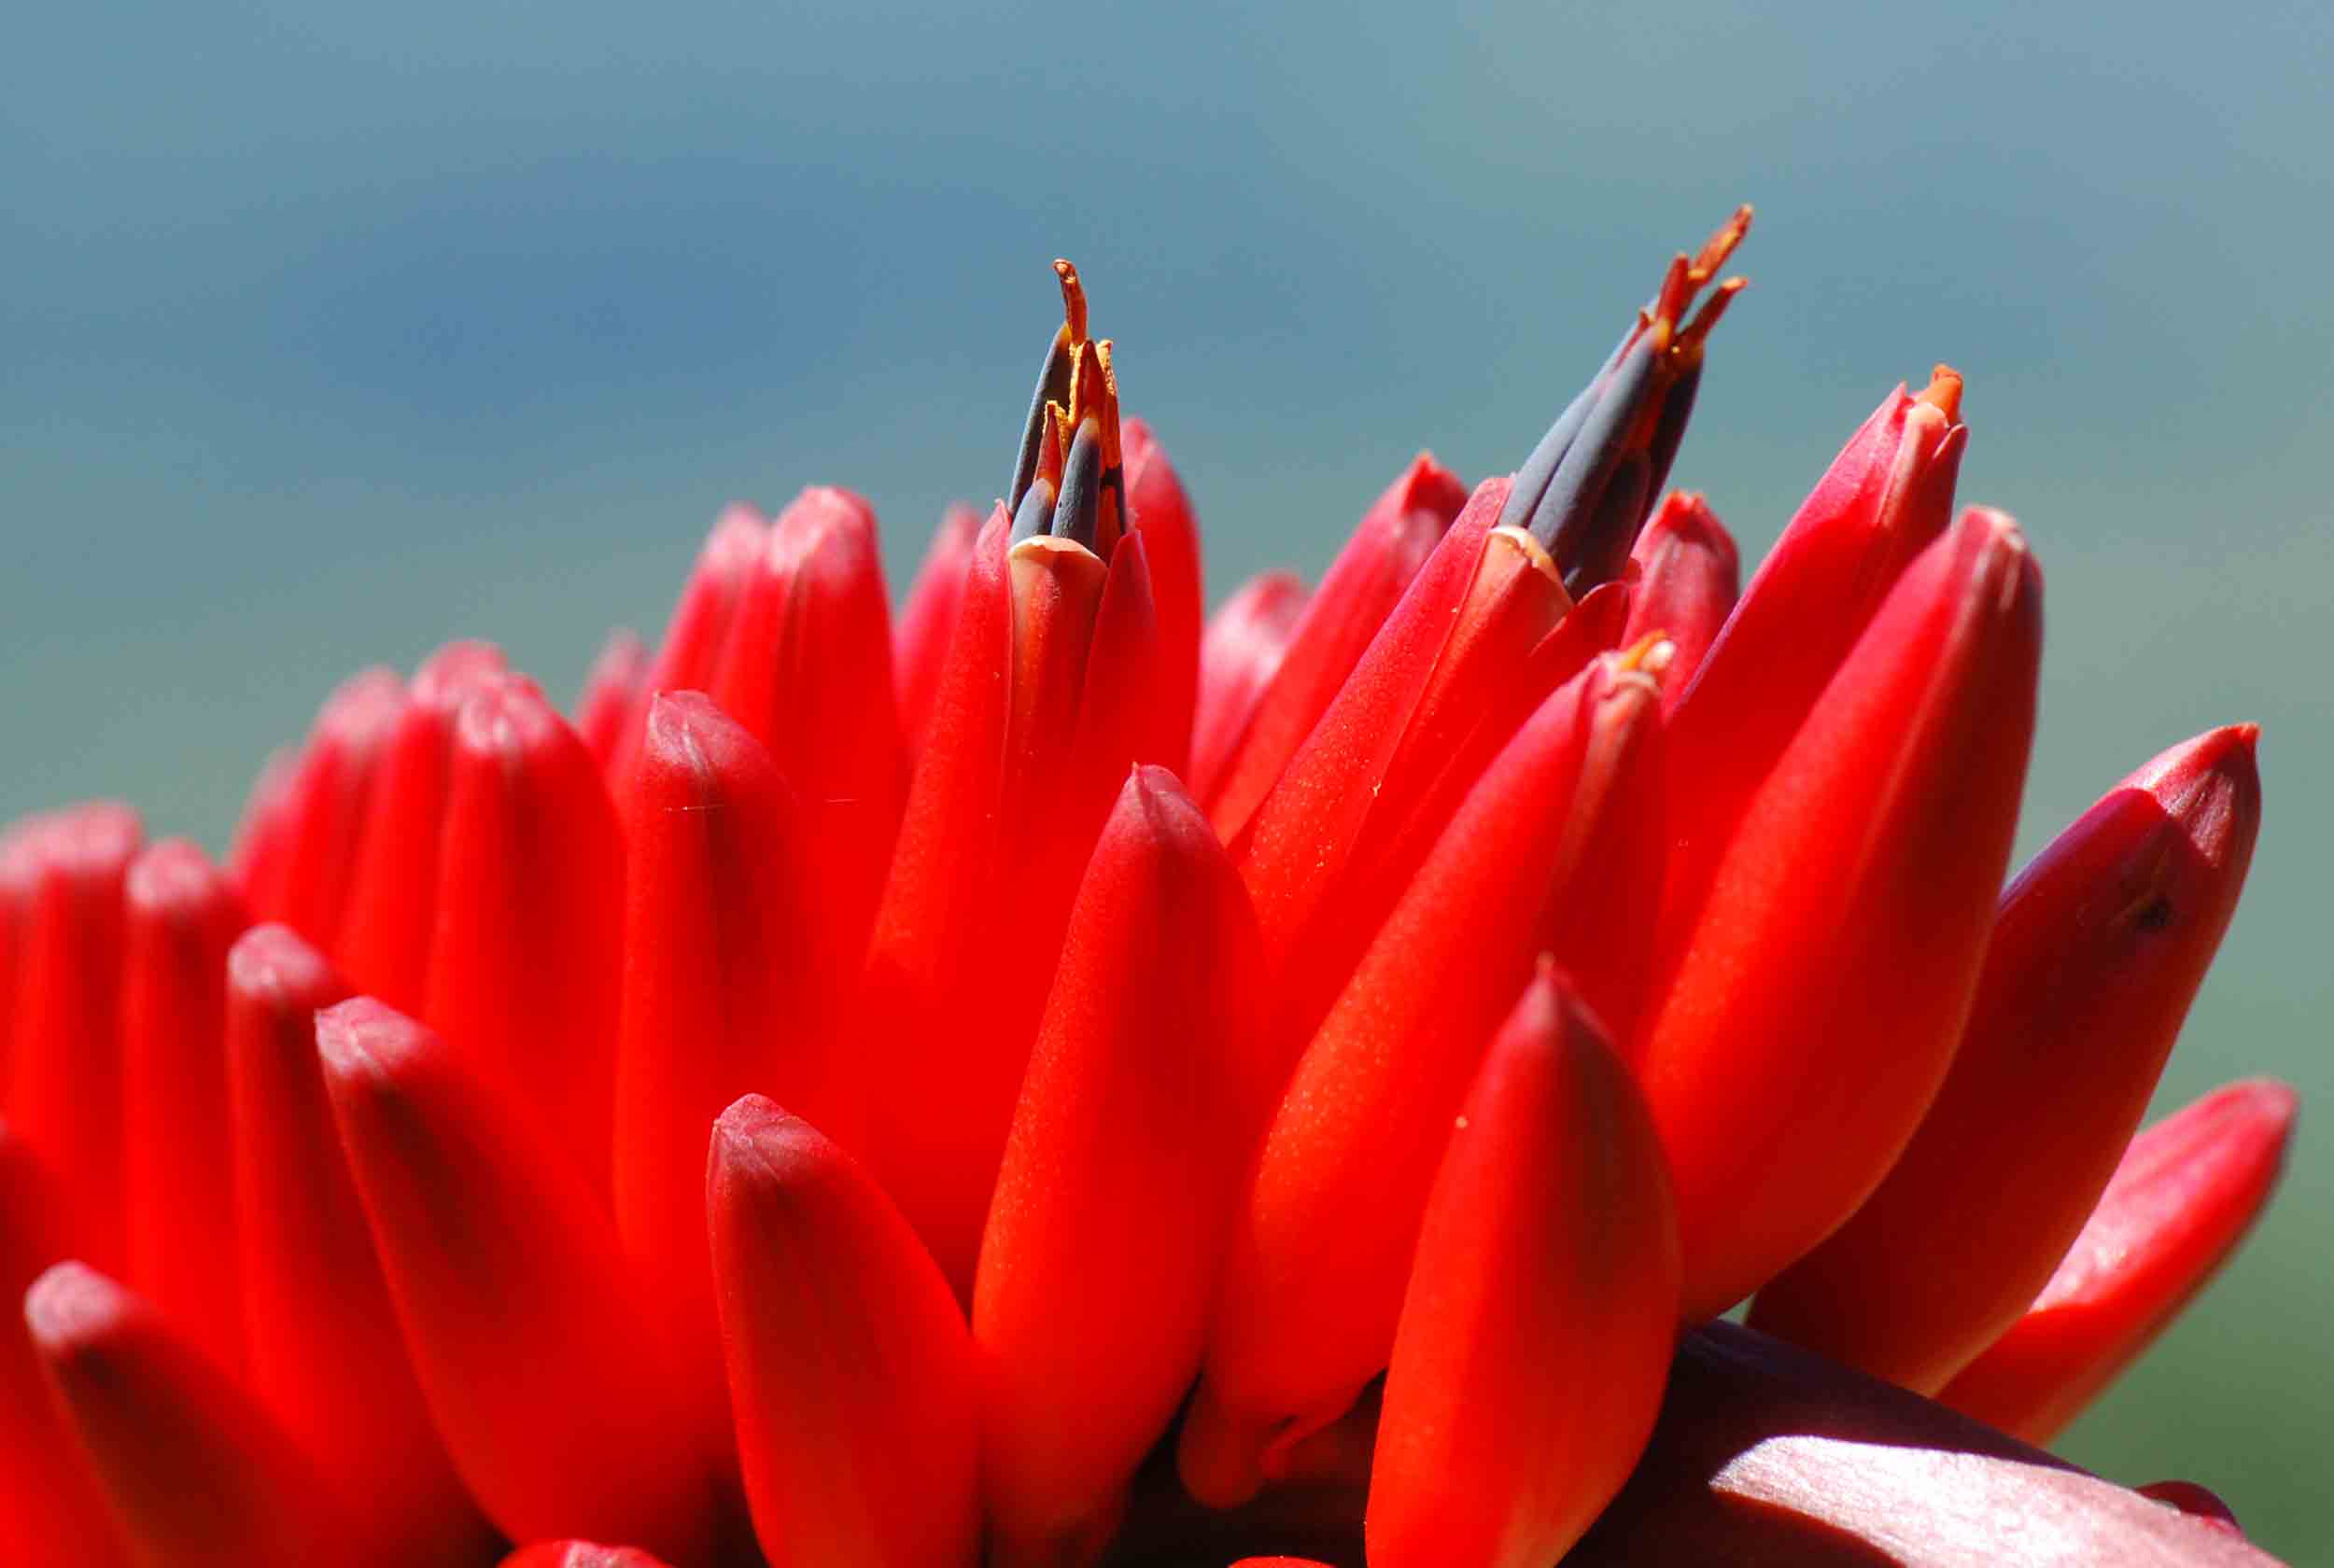 Aloe mawii